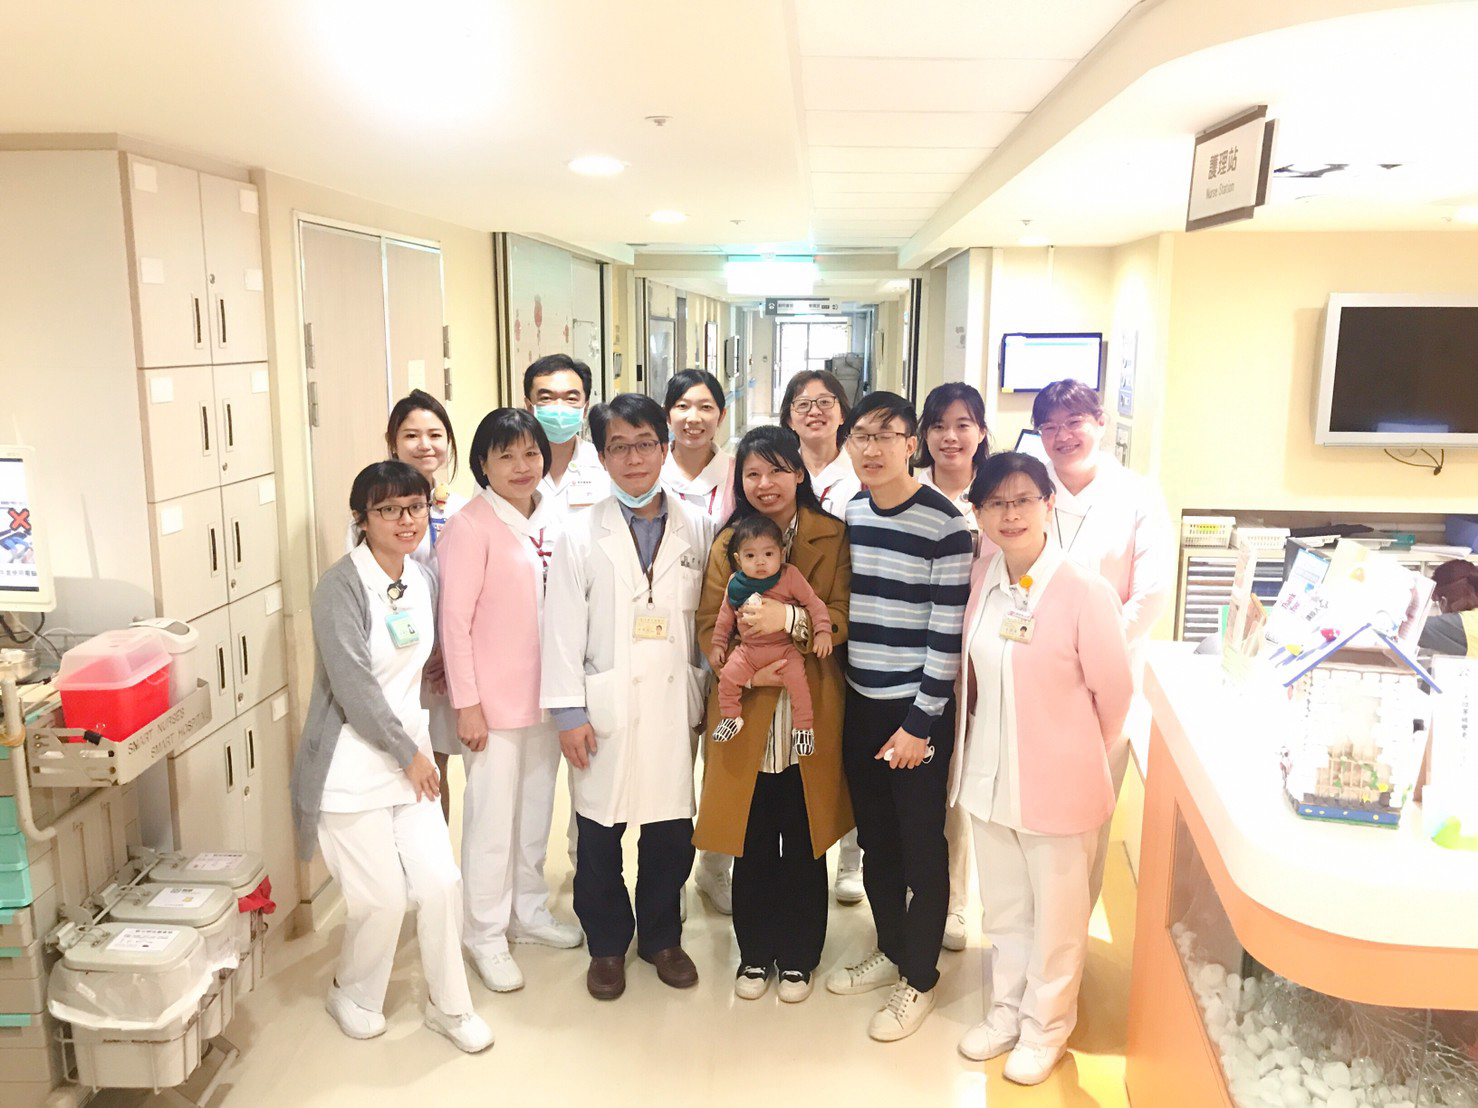 由臺北榮總移植外科劉君恕 主任所領導的肝臟移植團隊與陳小弟 BunBun合影留念。